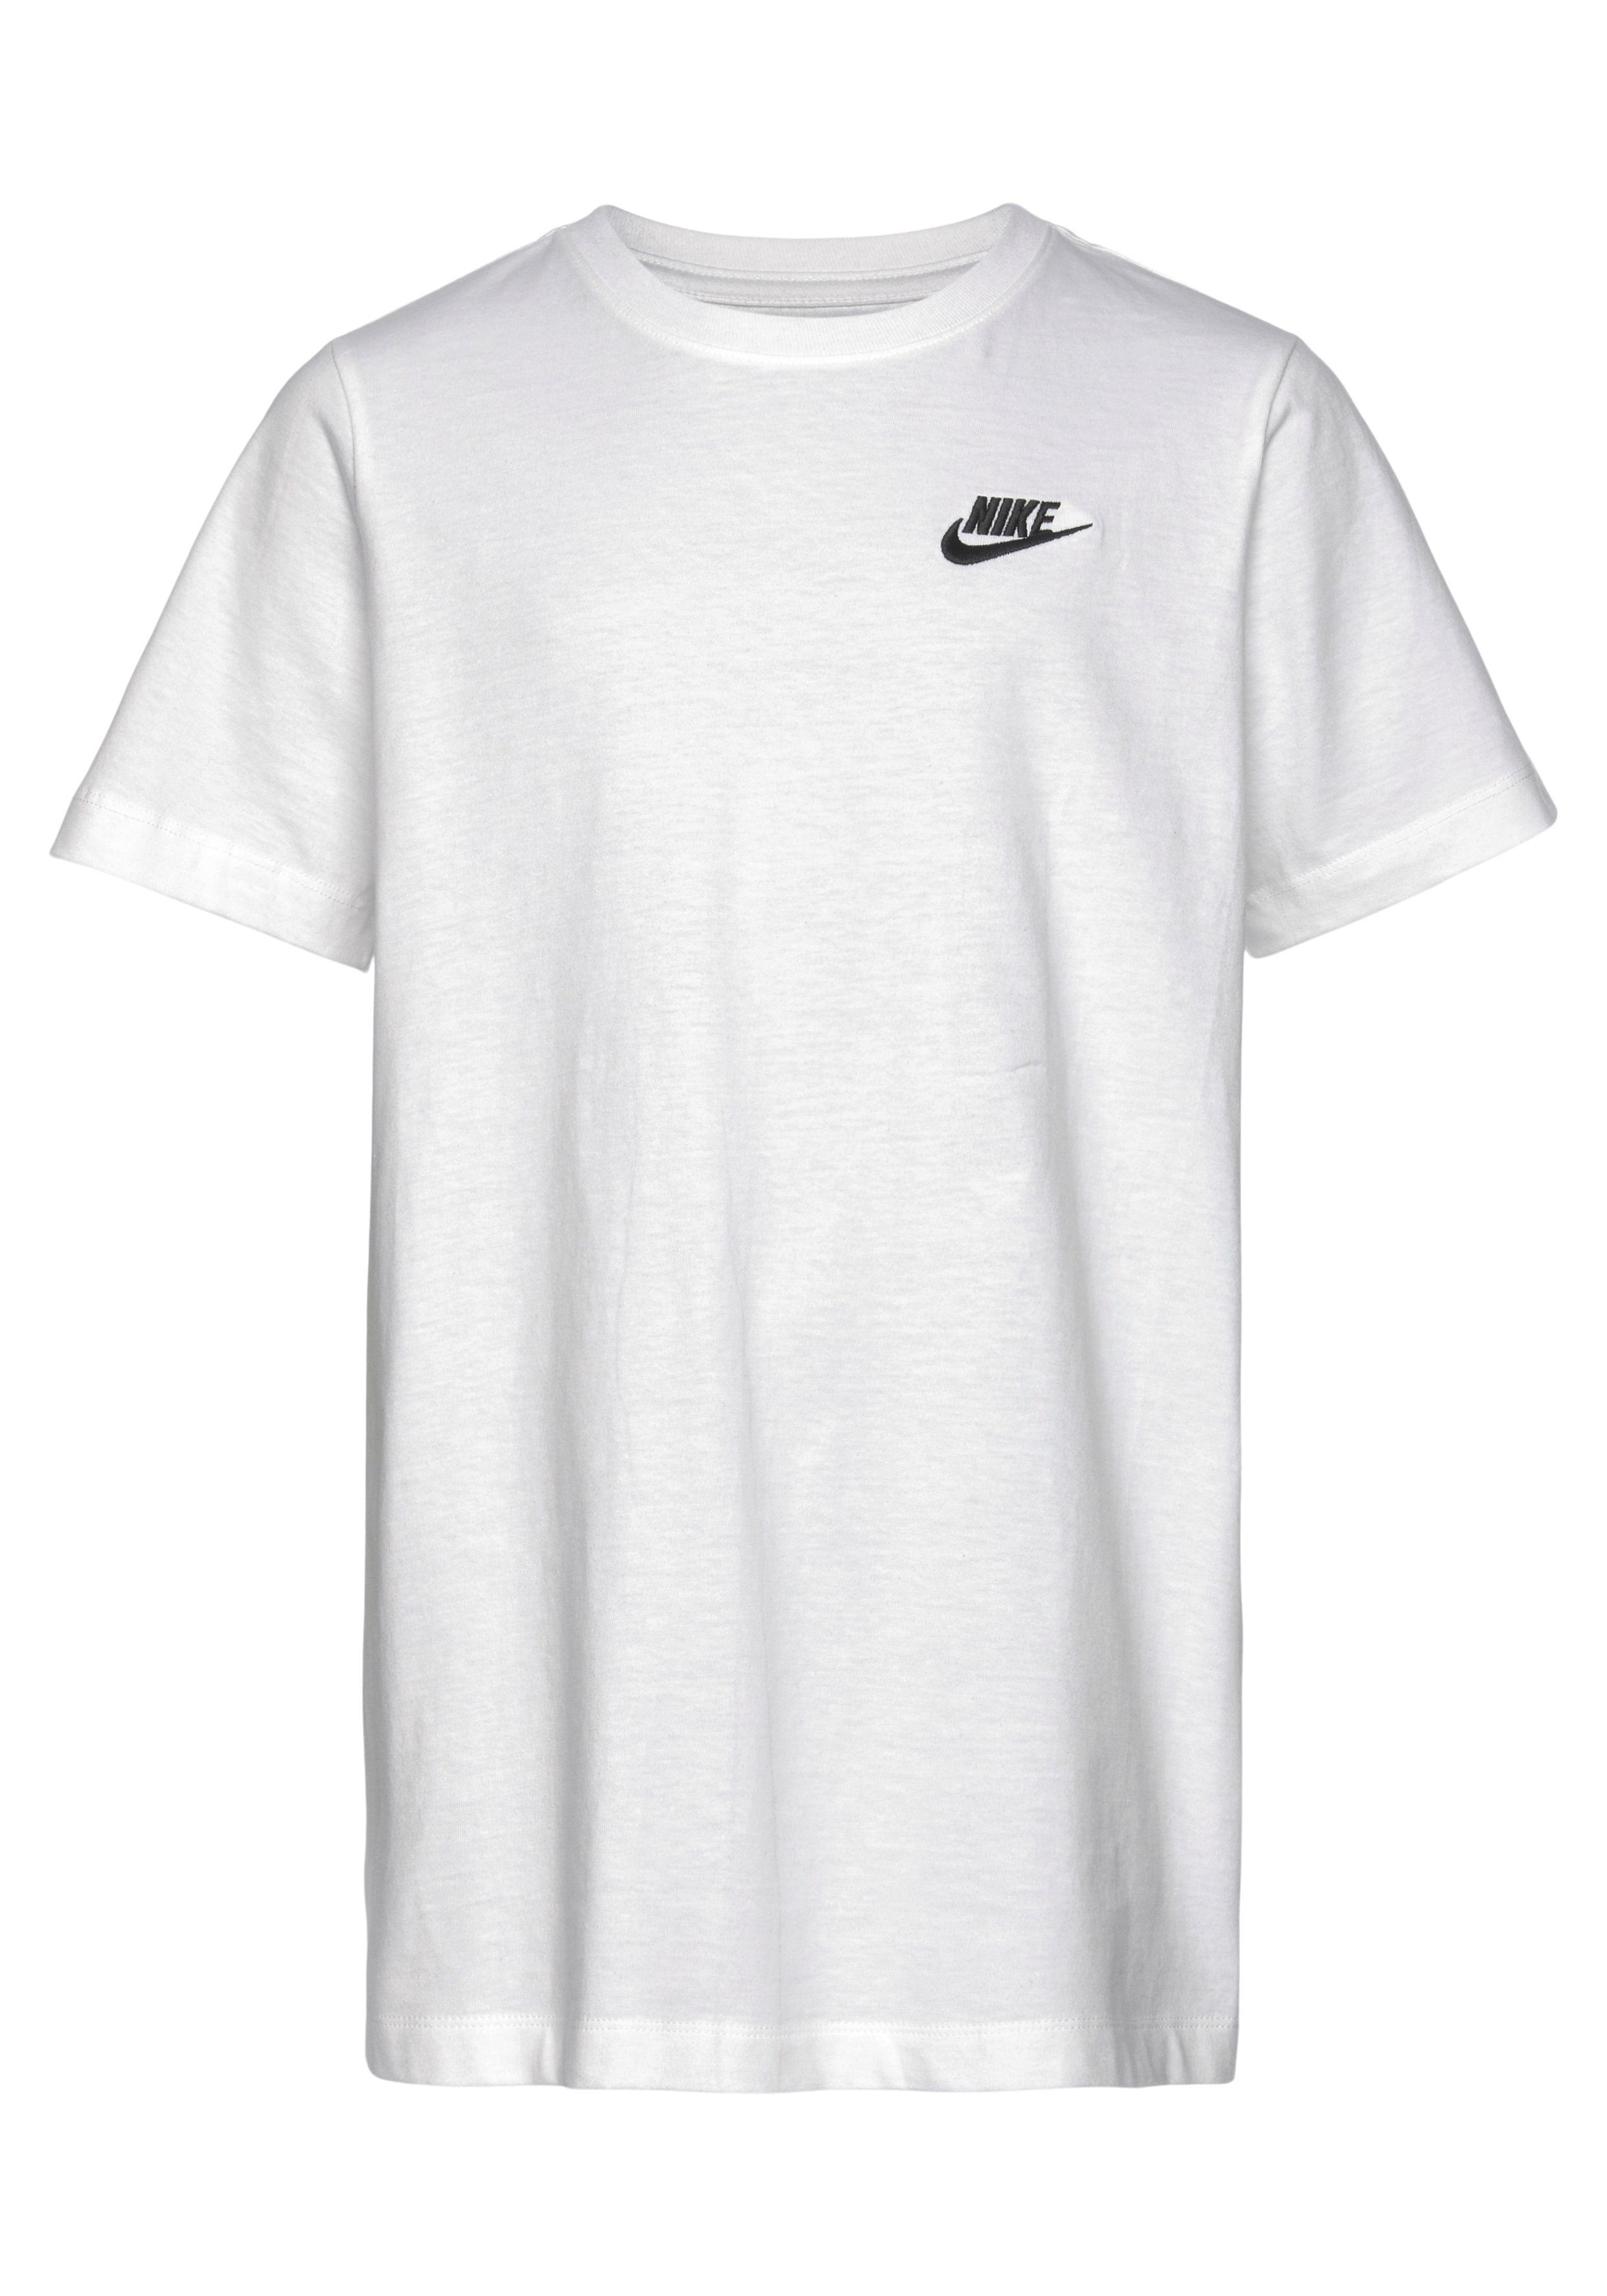 KIDS' weiß T-Shirt T-SHIRT Nike Sportswear BIG